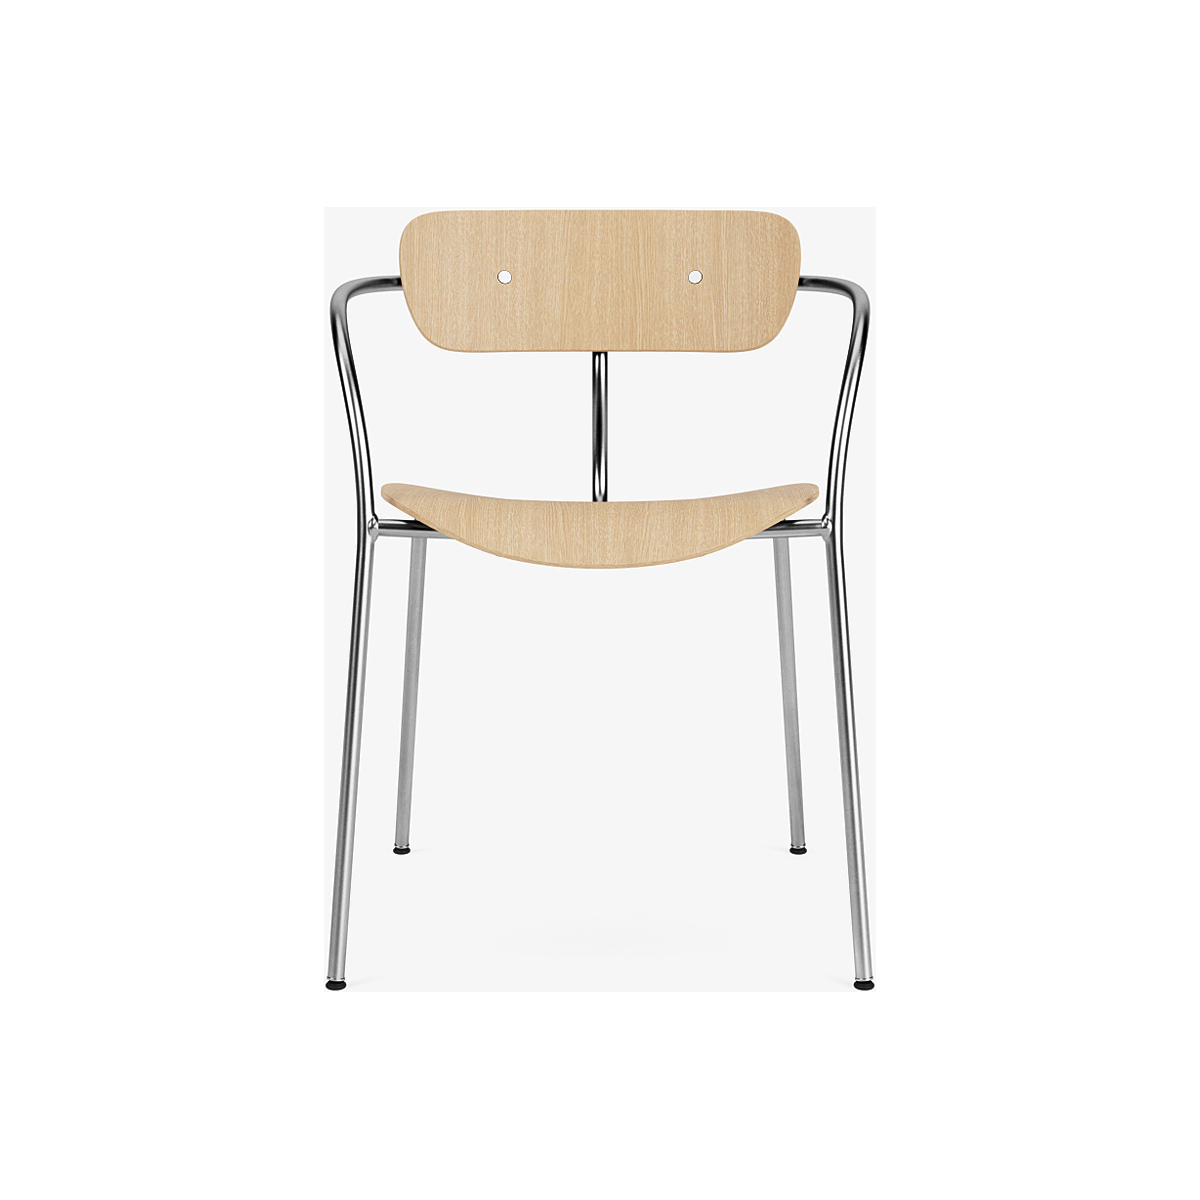 Pavilion AV2 chair – lacquered oak + chrome fittings + chrome legs